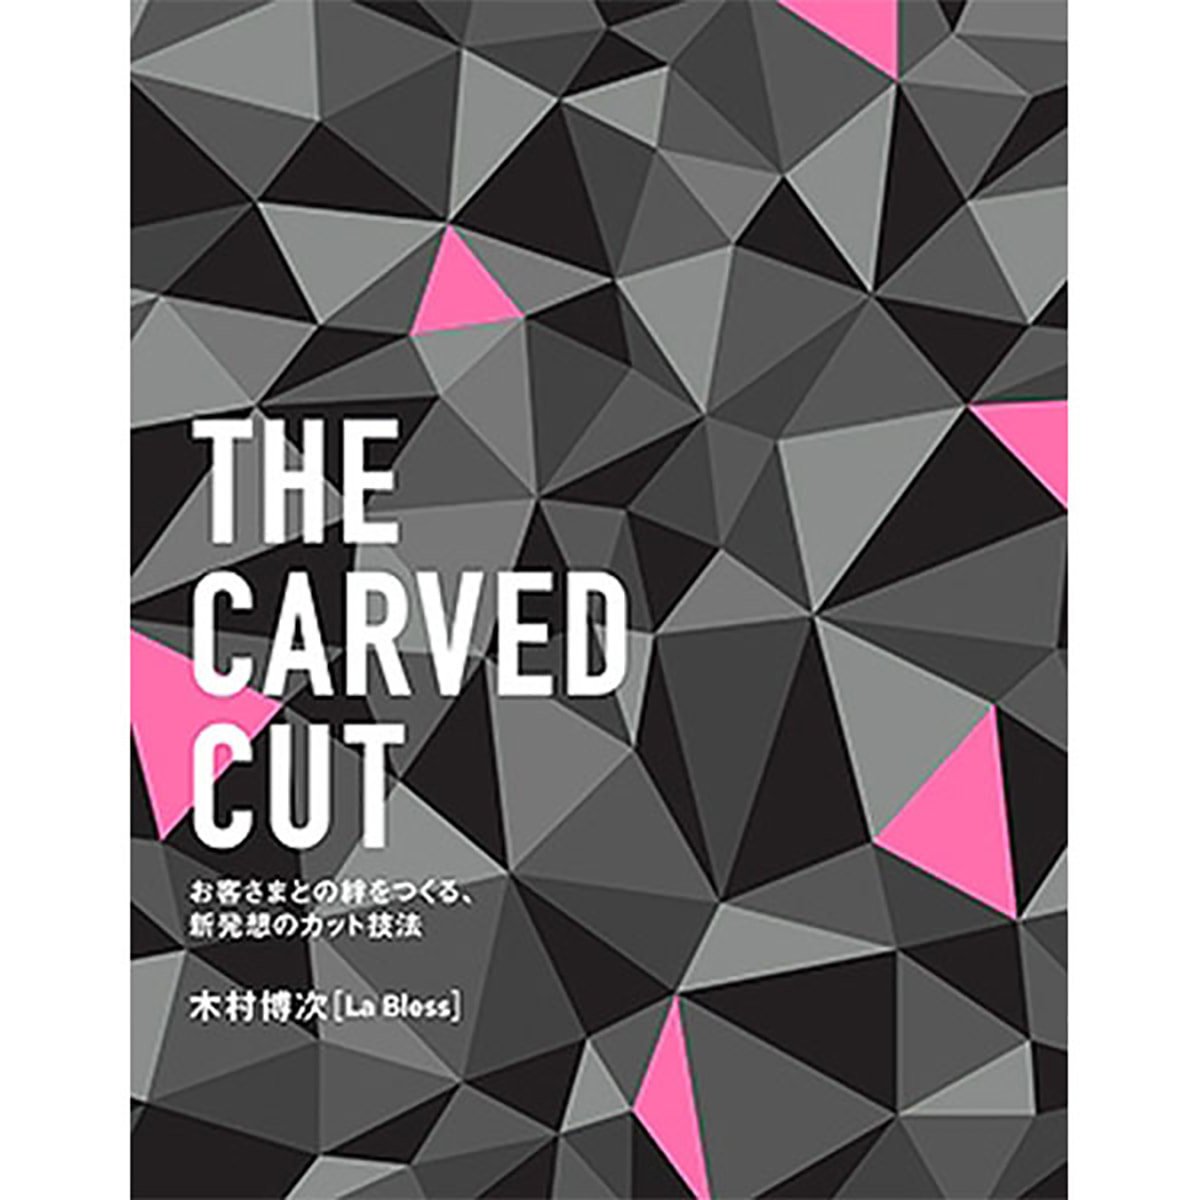 The Carved Cut お客さまとの絆をつくる 新発想のカット技法 の卸 通販 ビューティガレージ